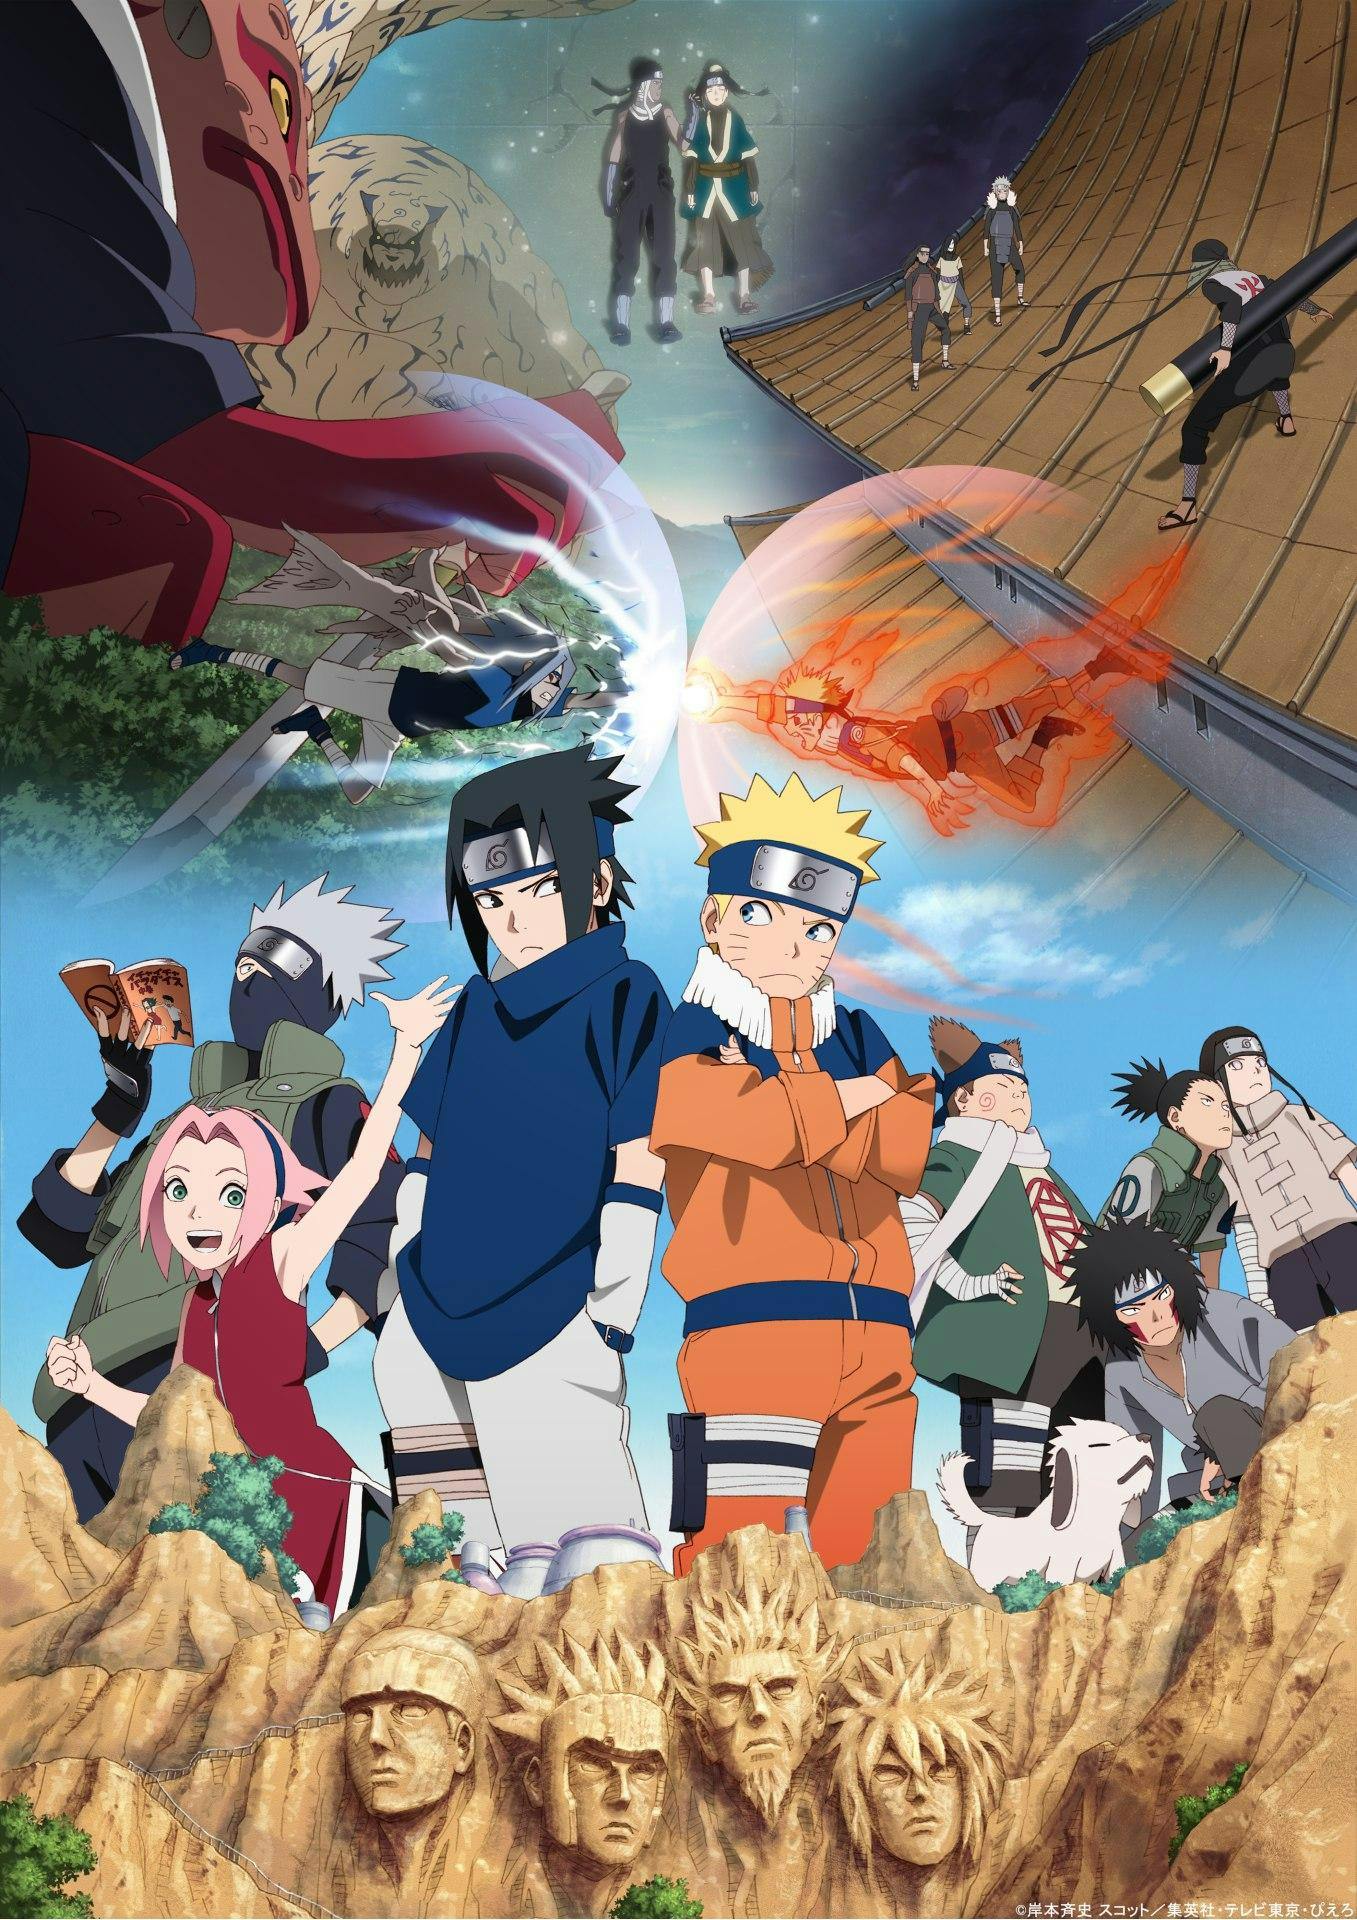 ナルサス  Naruto uzumaki hokage, Naruto uzumaki, Naruto shippuden anime